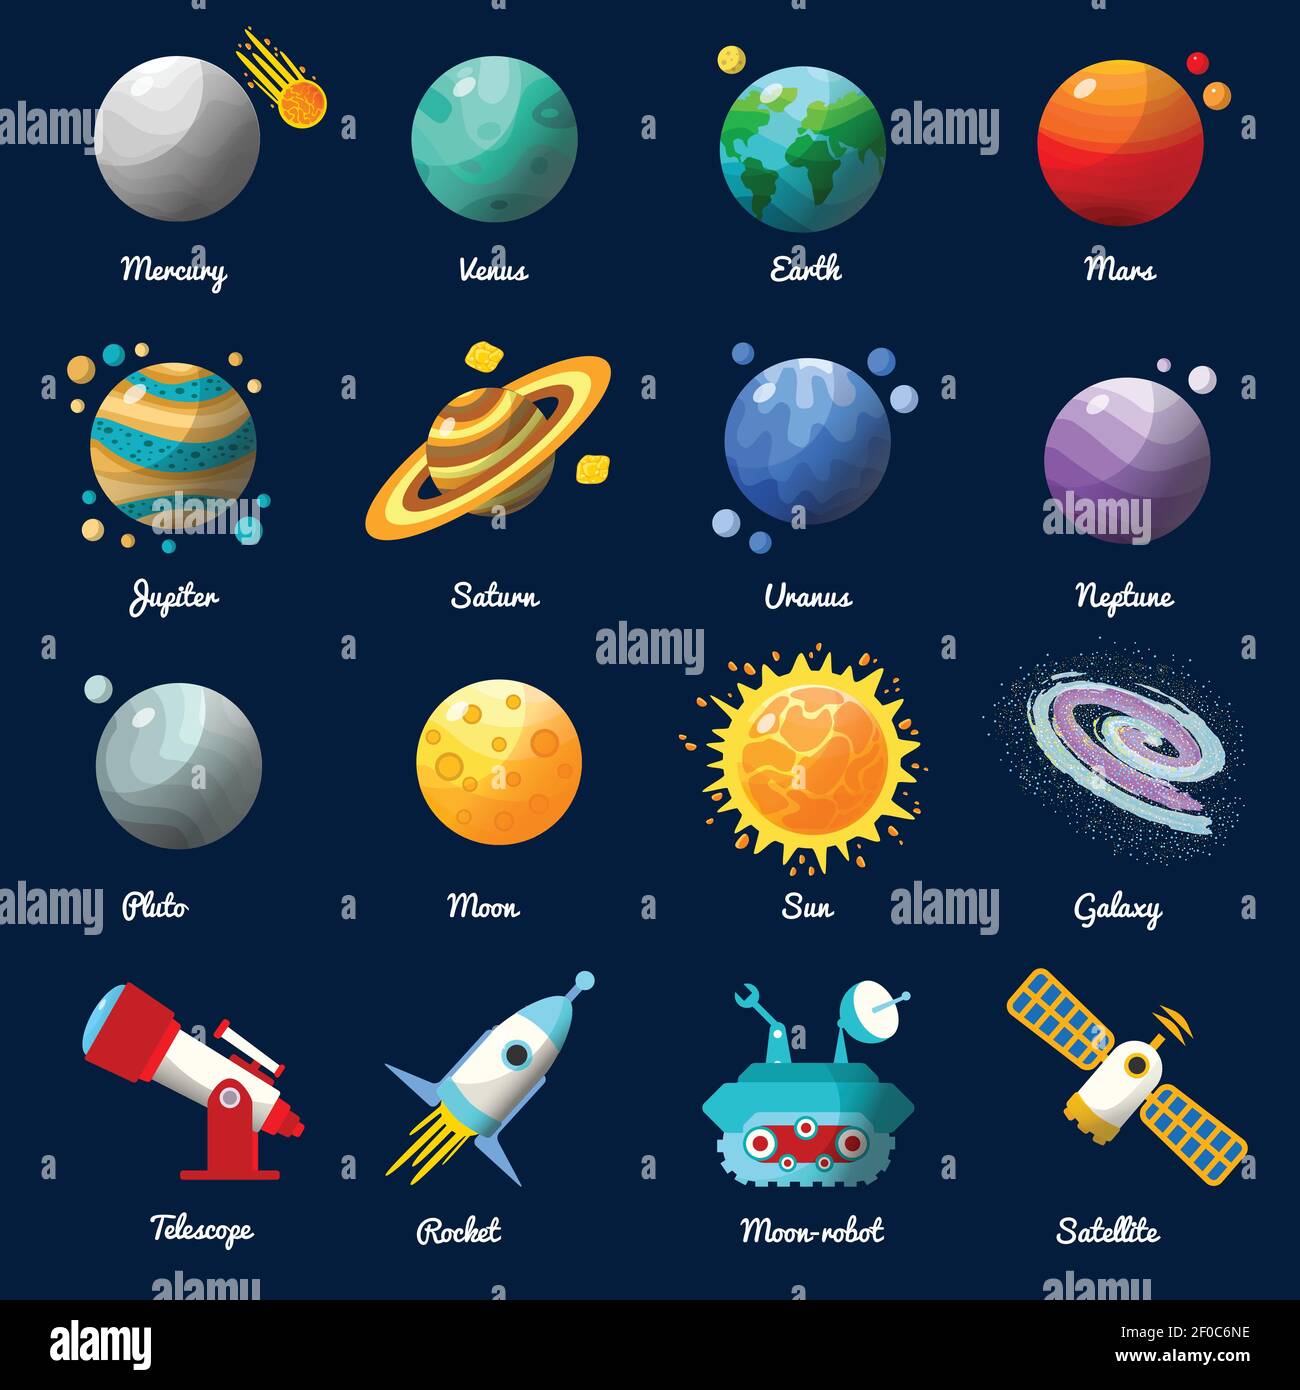 Raum Universum Icon Set mit Beschreibungen der Planeten Namen und Vektorgrafik Raumfahrttechnologie Stock Vektor